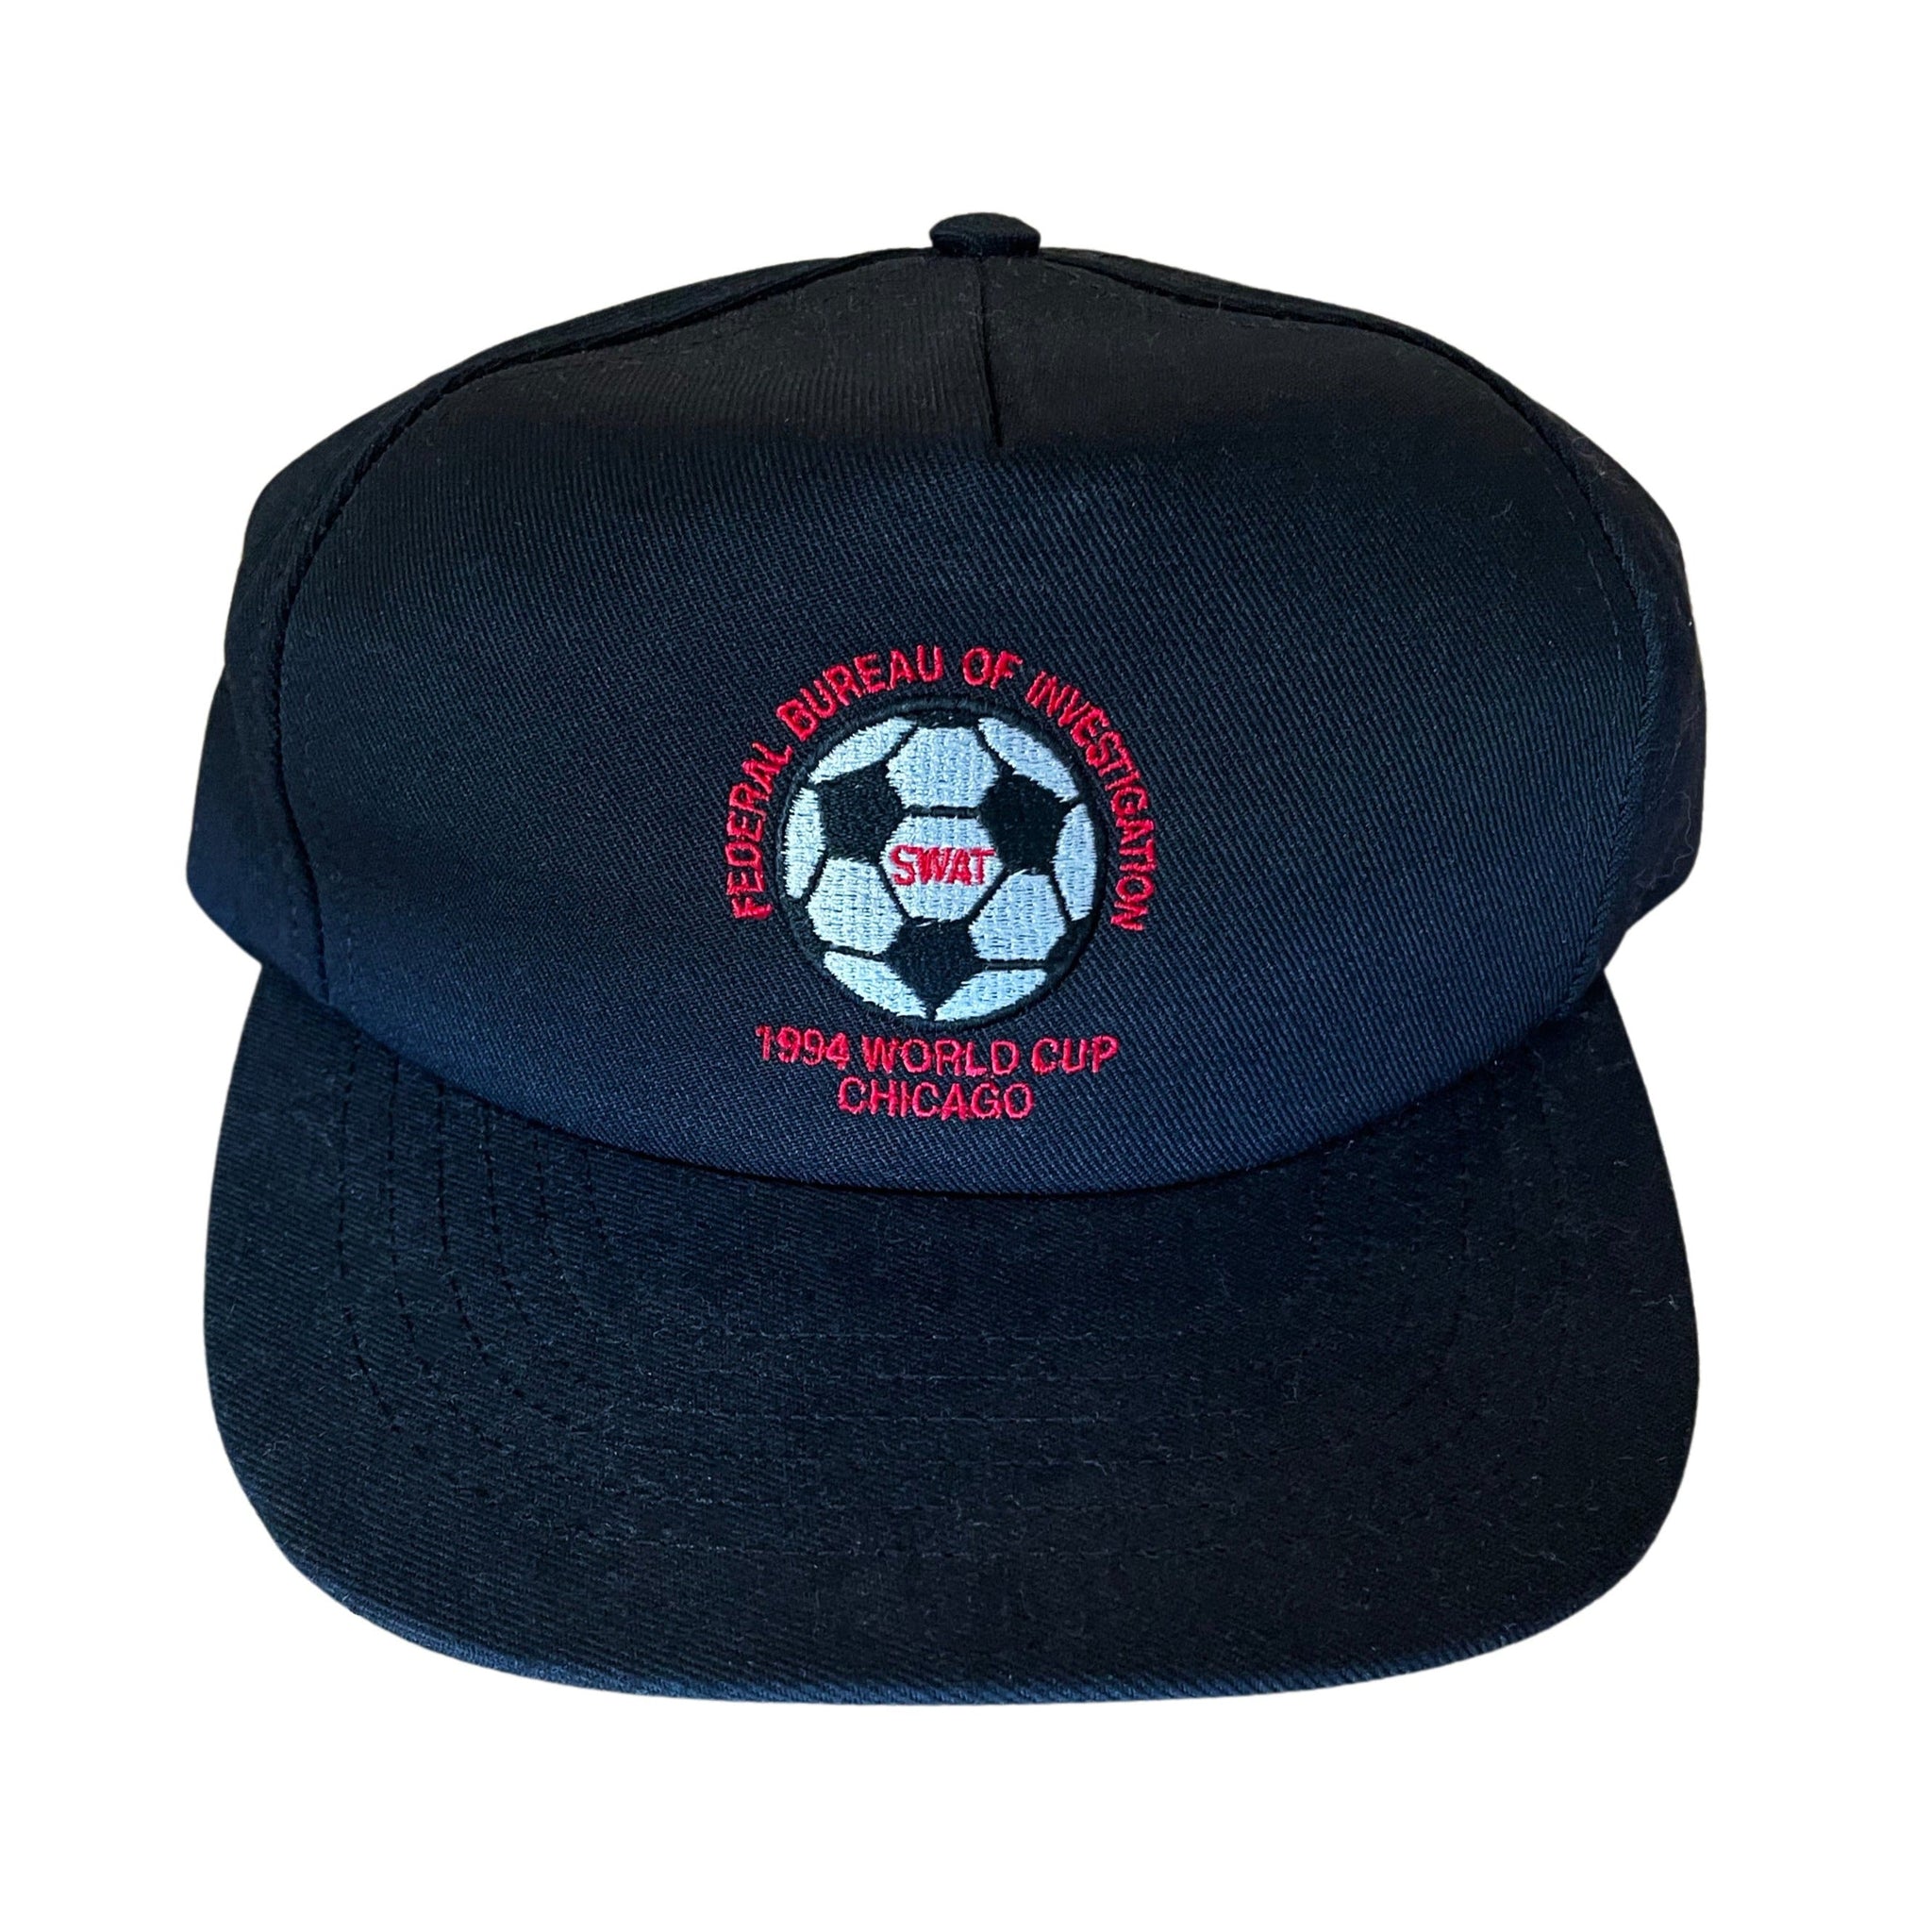 1994 World Cup FBI SWAT Team Chicago Hat